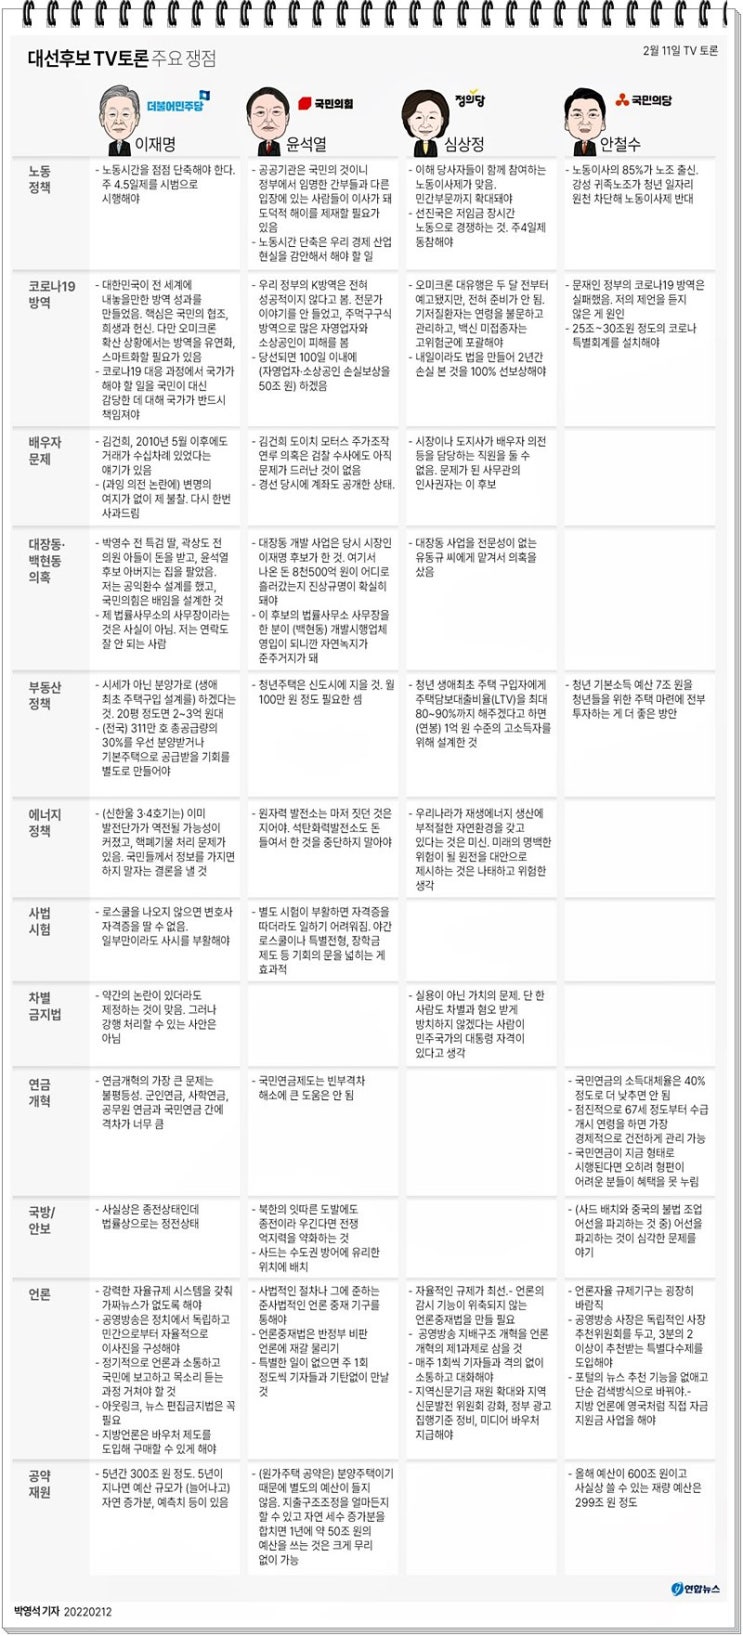 2차 대선후보 TV토론 주요 쟁점사항(02.11.)